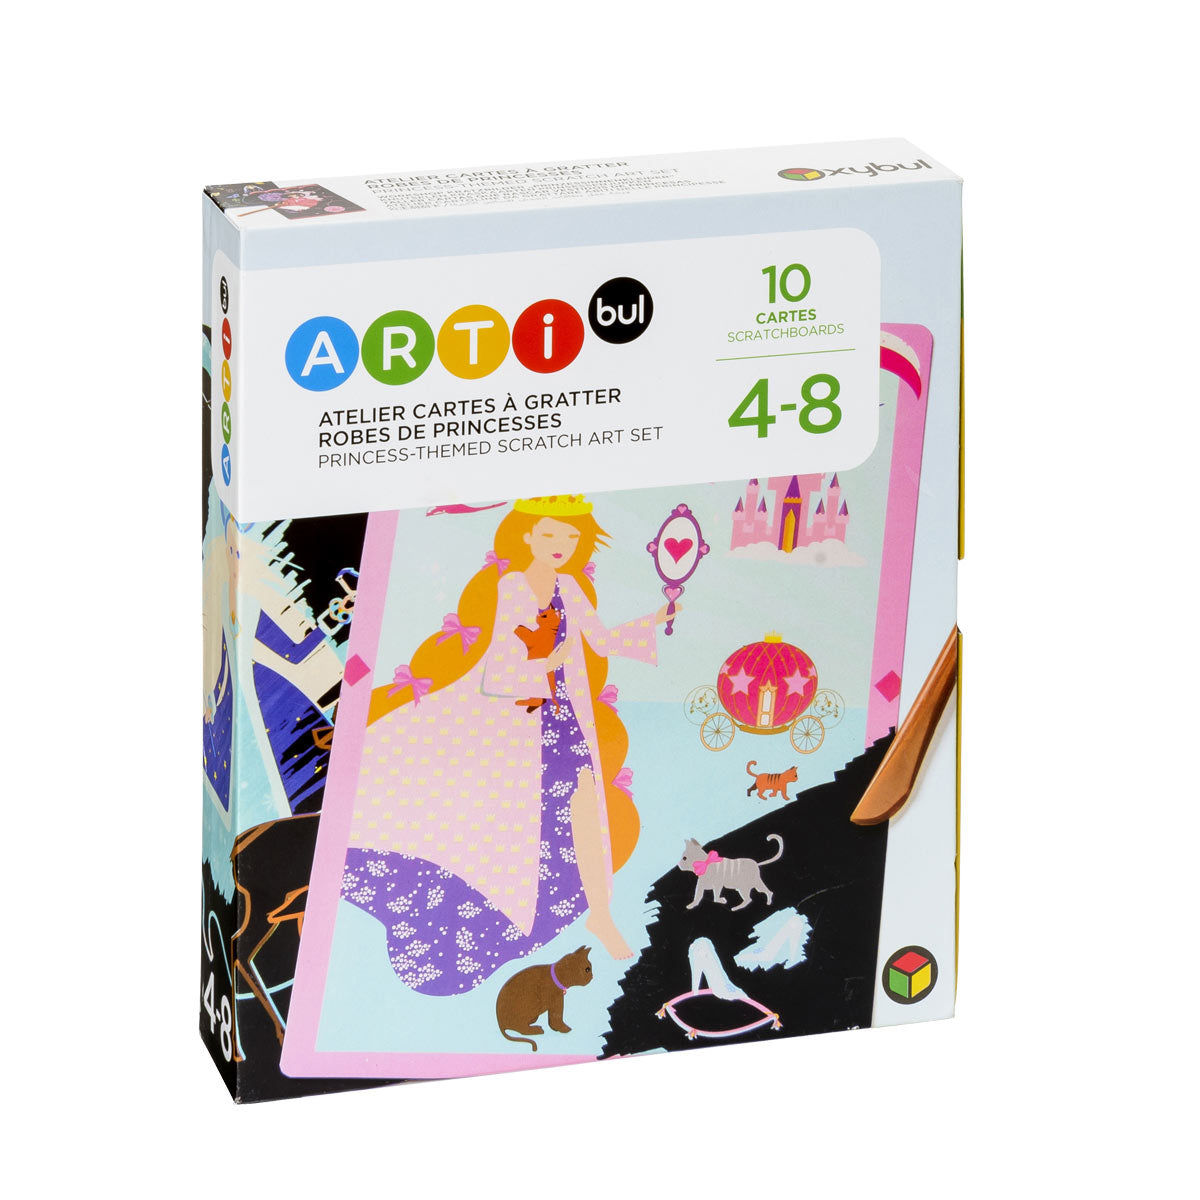 OXYBUL - Atelier Cartes à gratter Robes de princesses